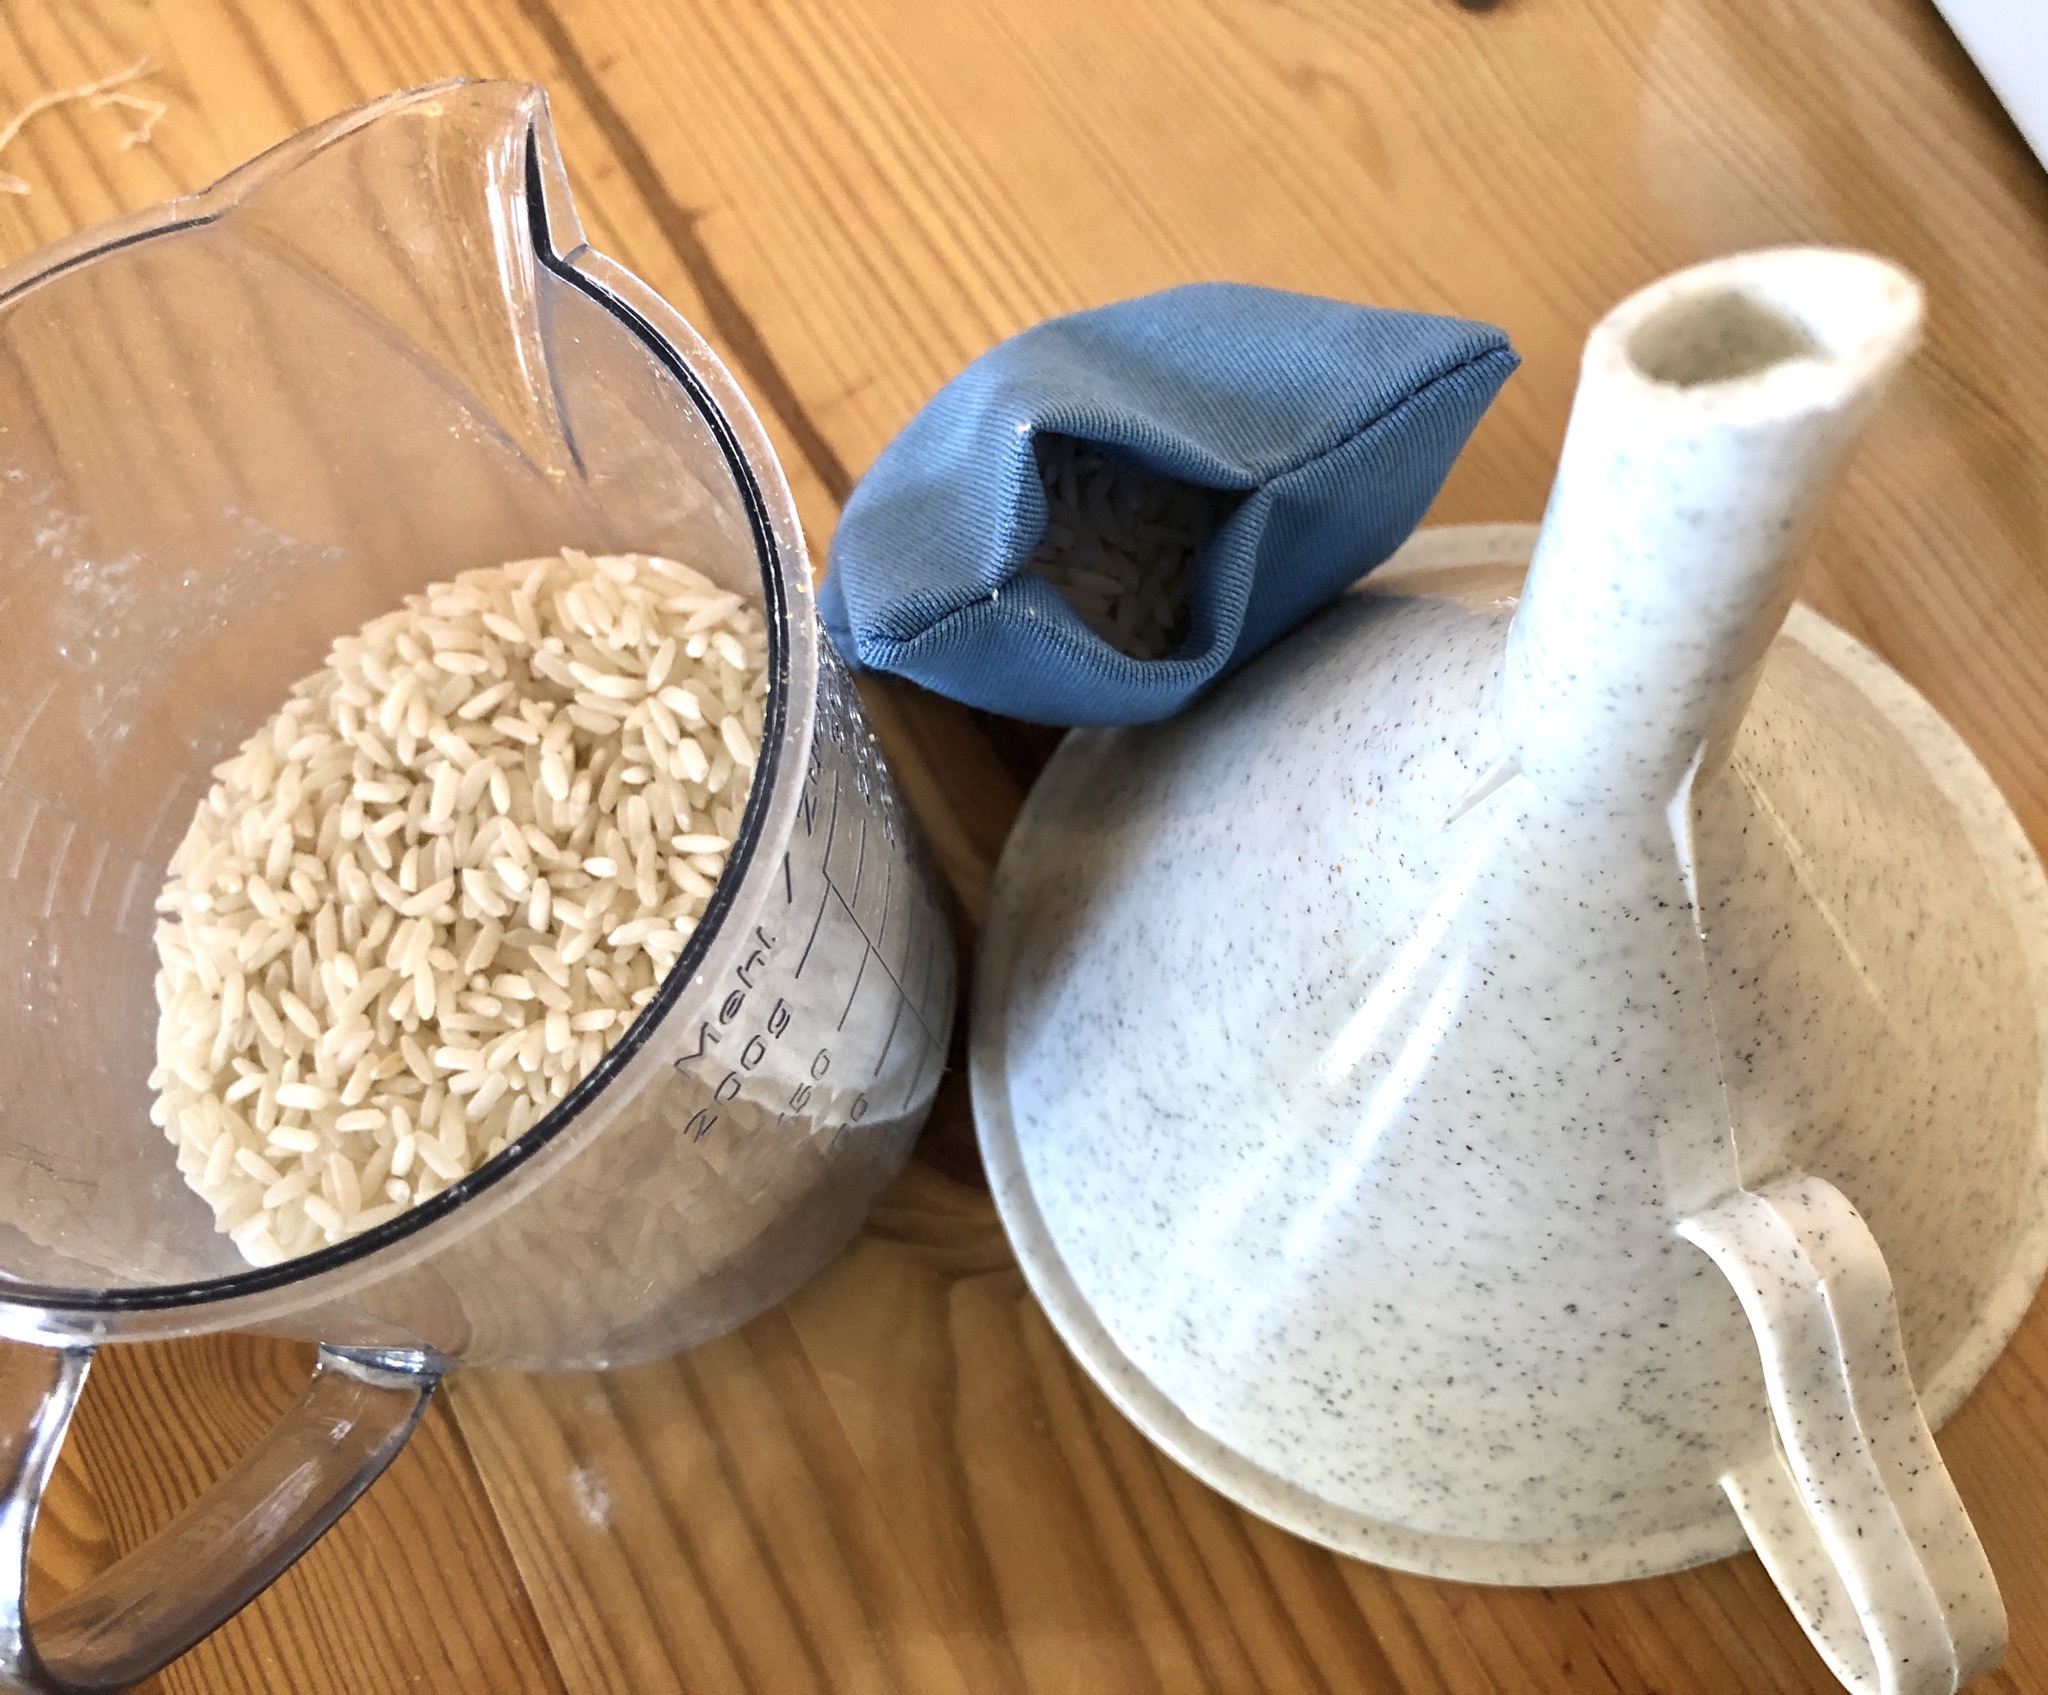 Bild zum Schritt 6 für das Bastel- und DIY-Abenteuer für Kinder: '60 g Reis abwiegen und mit Hilfe eines Trichters in...'